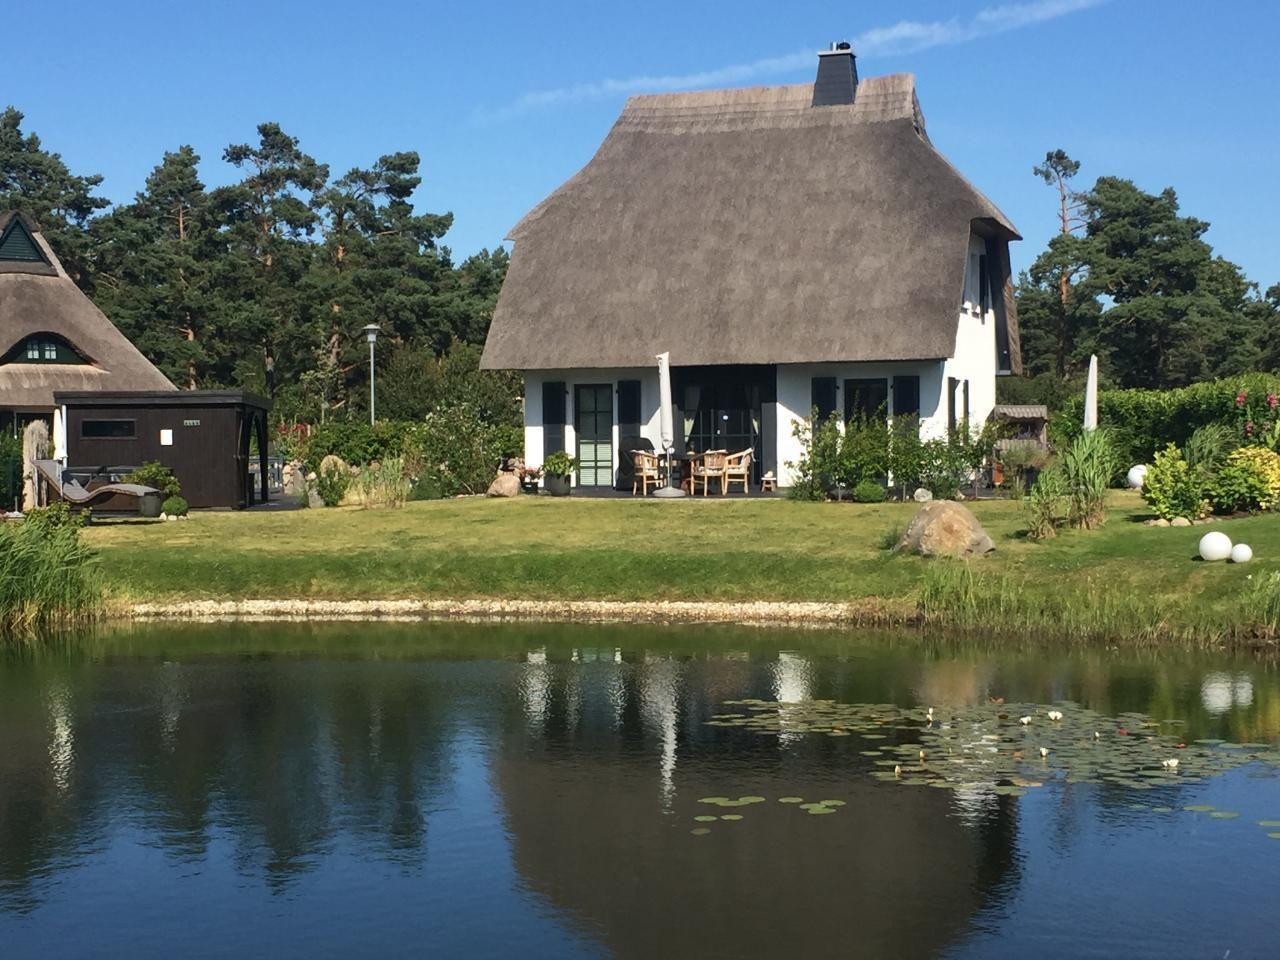 5 Sterne Reetdachhaus in Sonnenlage am Wasser mit   in Mecklenburg Vorpommern